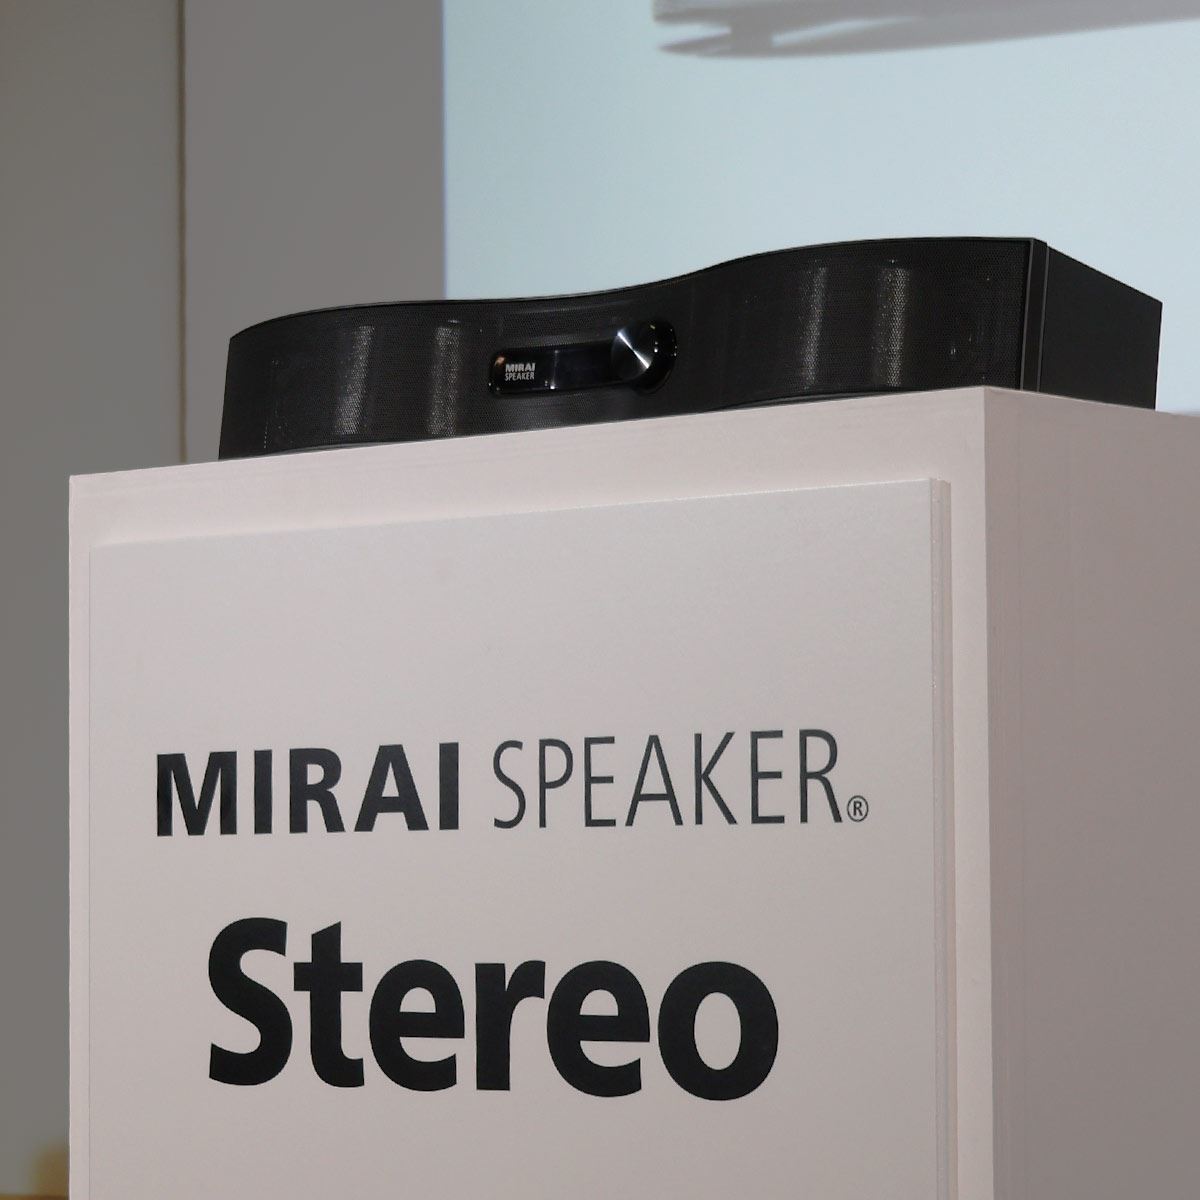 ありがとうございましたミライスピーカー ステレオ Mirai Speaker Stereo